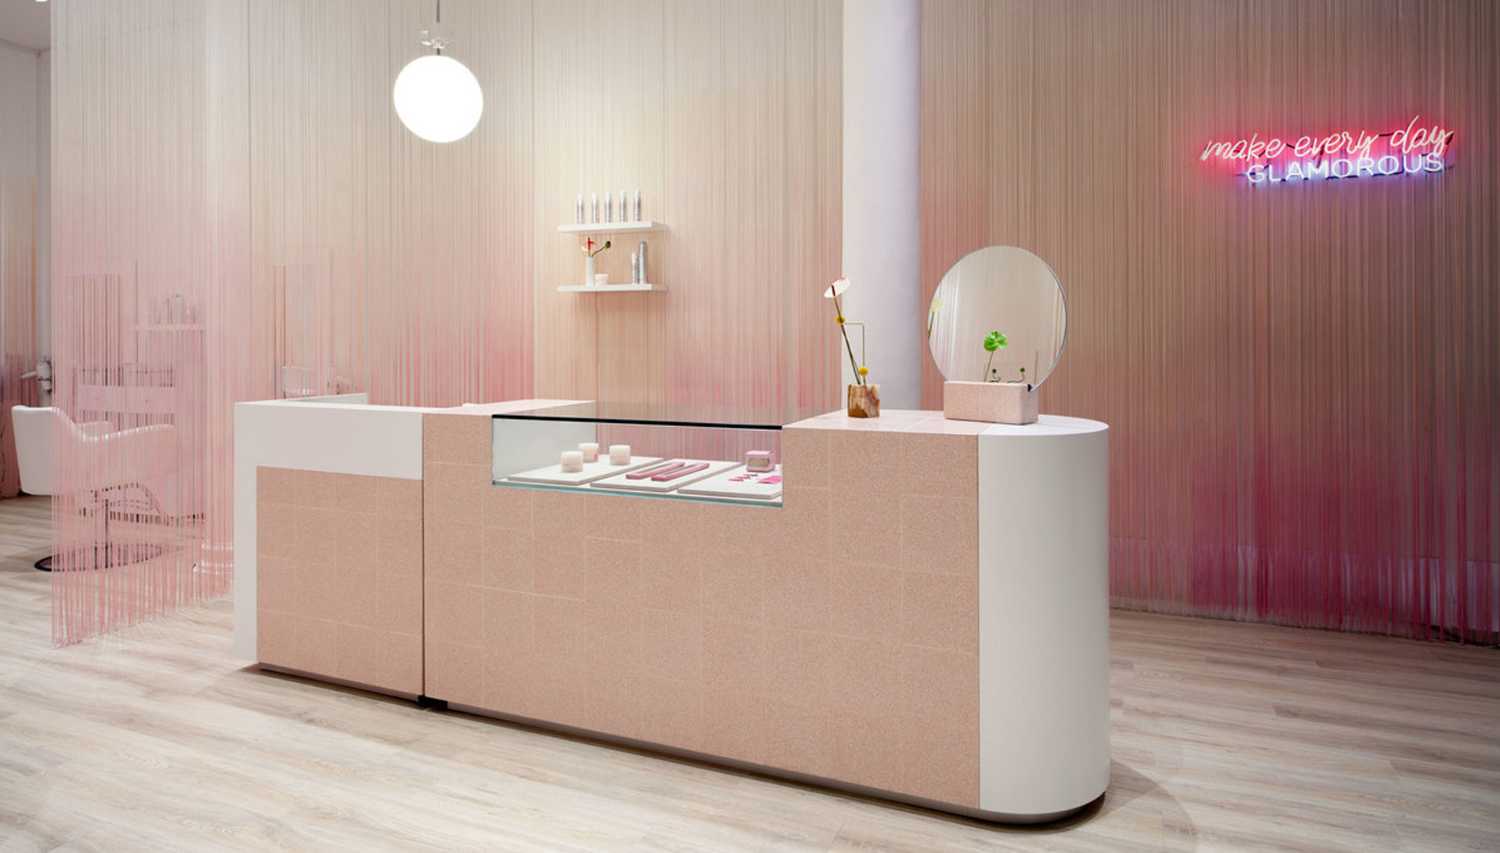 Glam Seamless: tienda elegante en rosa y blanco en Soho